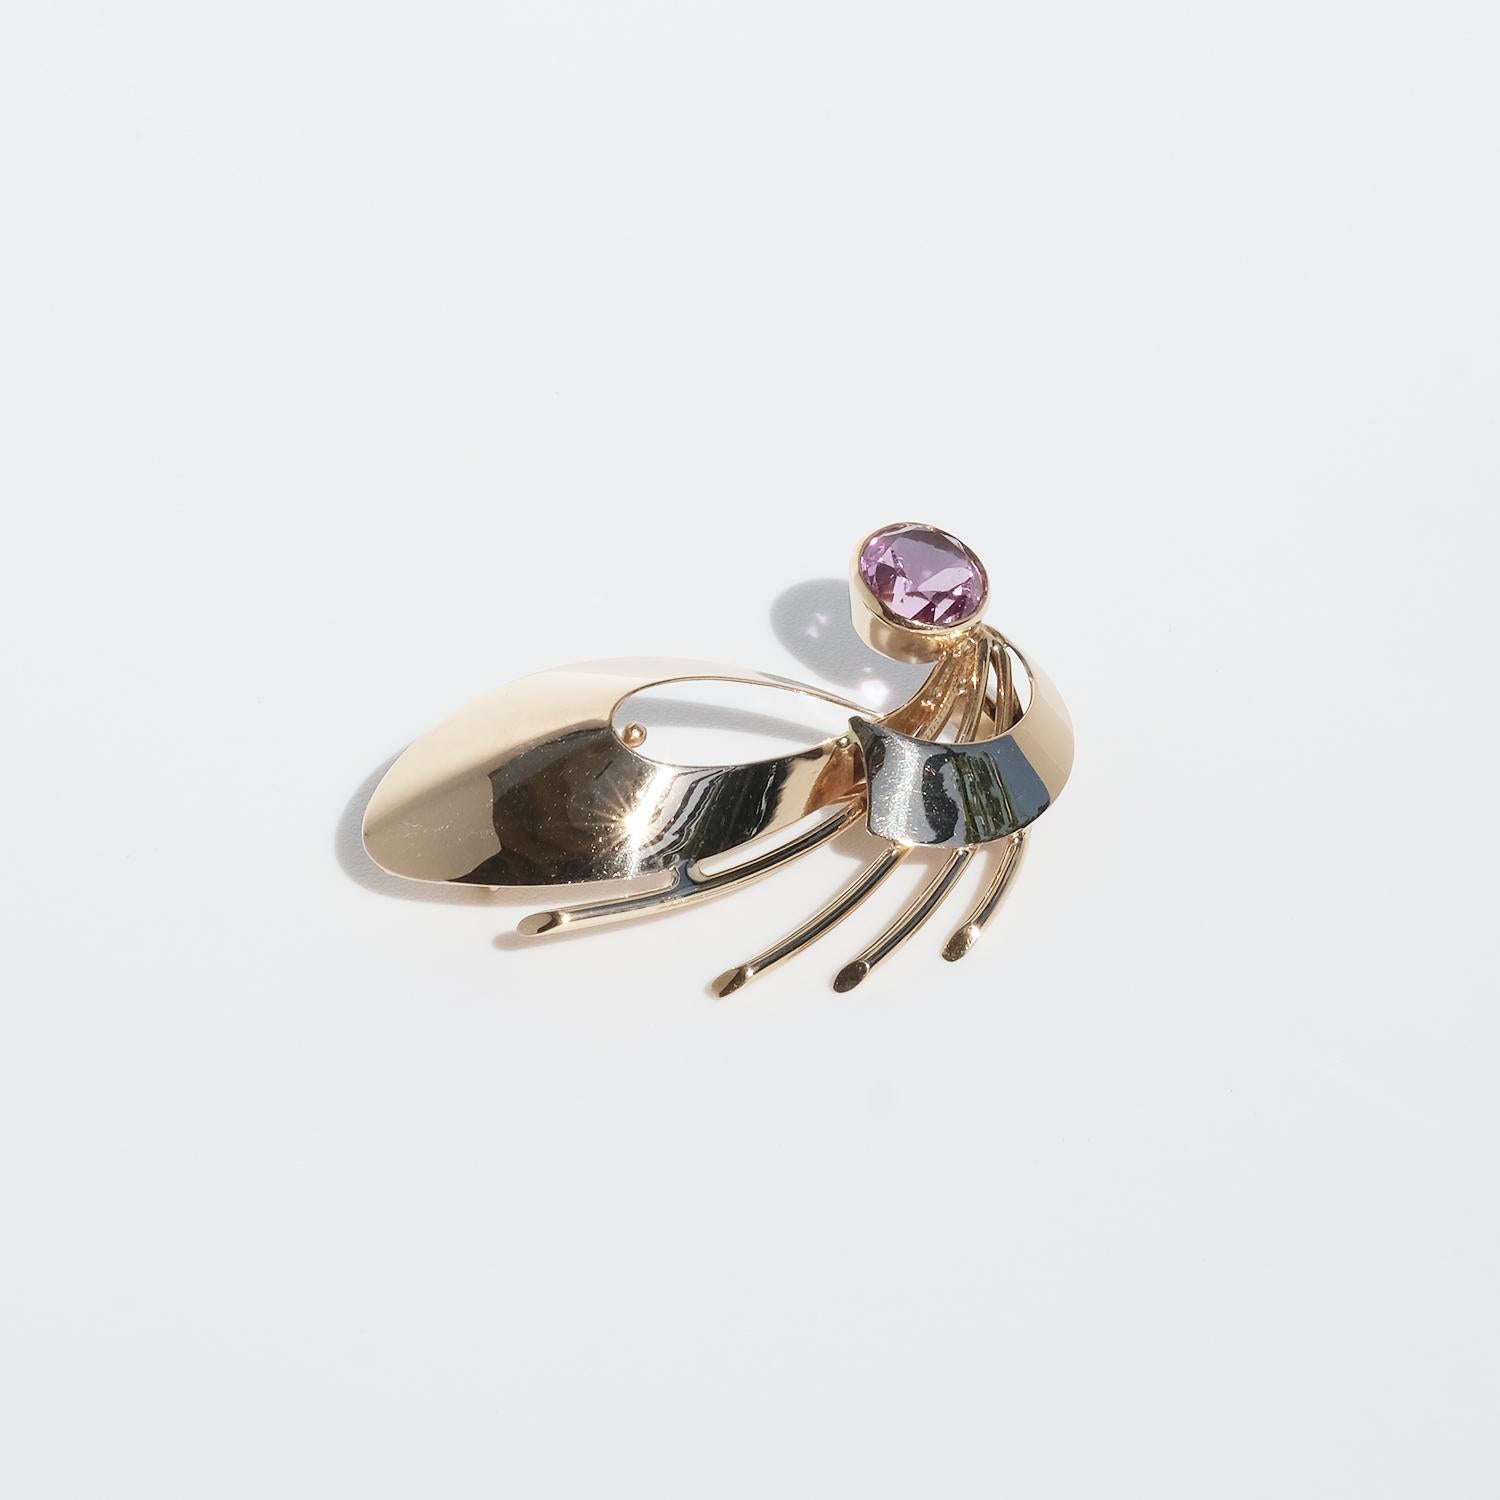 Ce saphir rose synthétique et en or 14 carats a une forme ressemblant à une belle libellule. Il se ferme facilement à l'aide d'un fermoir en C.

La broche a un aspect charmant et joyeux, ce qui en fait un élément parfait pour le col ou le poignet